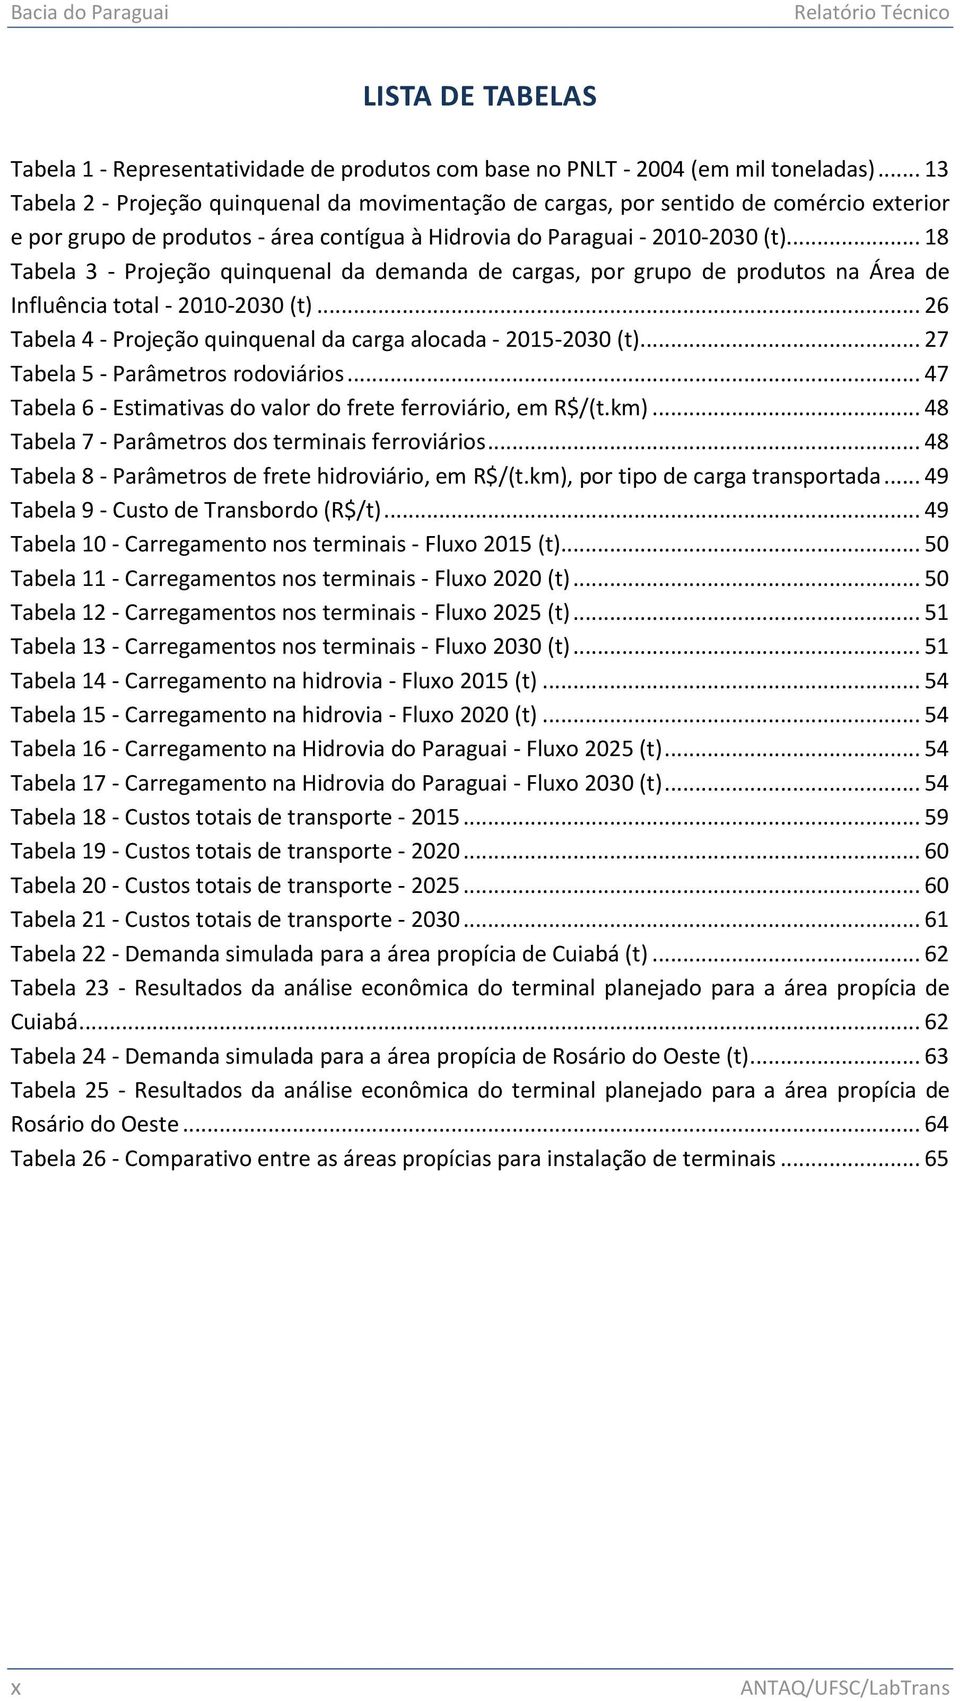 .. 18 Tabela 3 - Projeção quinquenal da demanda de cargas, por grupo de produtos na Área de Influência total - 2010-2030 (t)... 26 Tabela 4 - Projeção quinquenal da carga alocada - 2015-2030 (t).